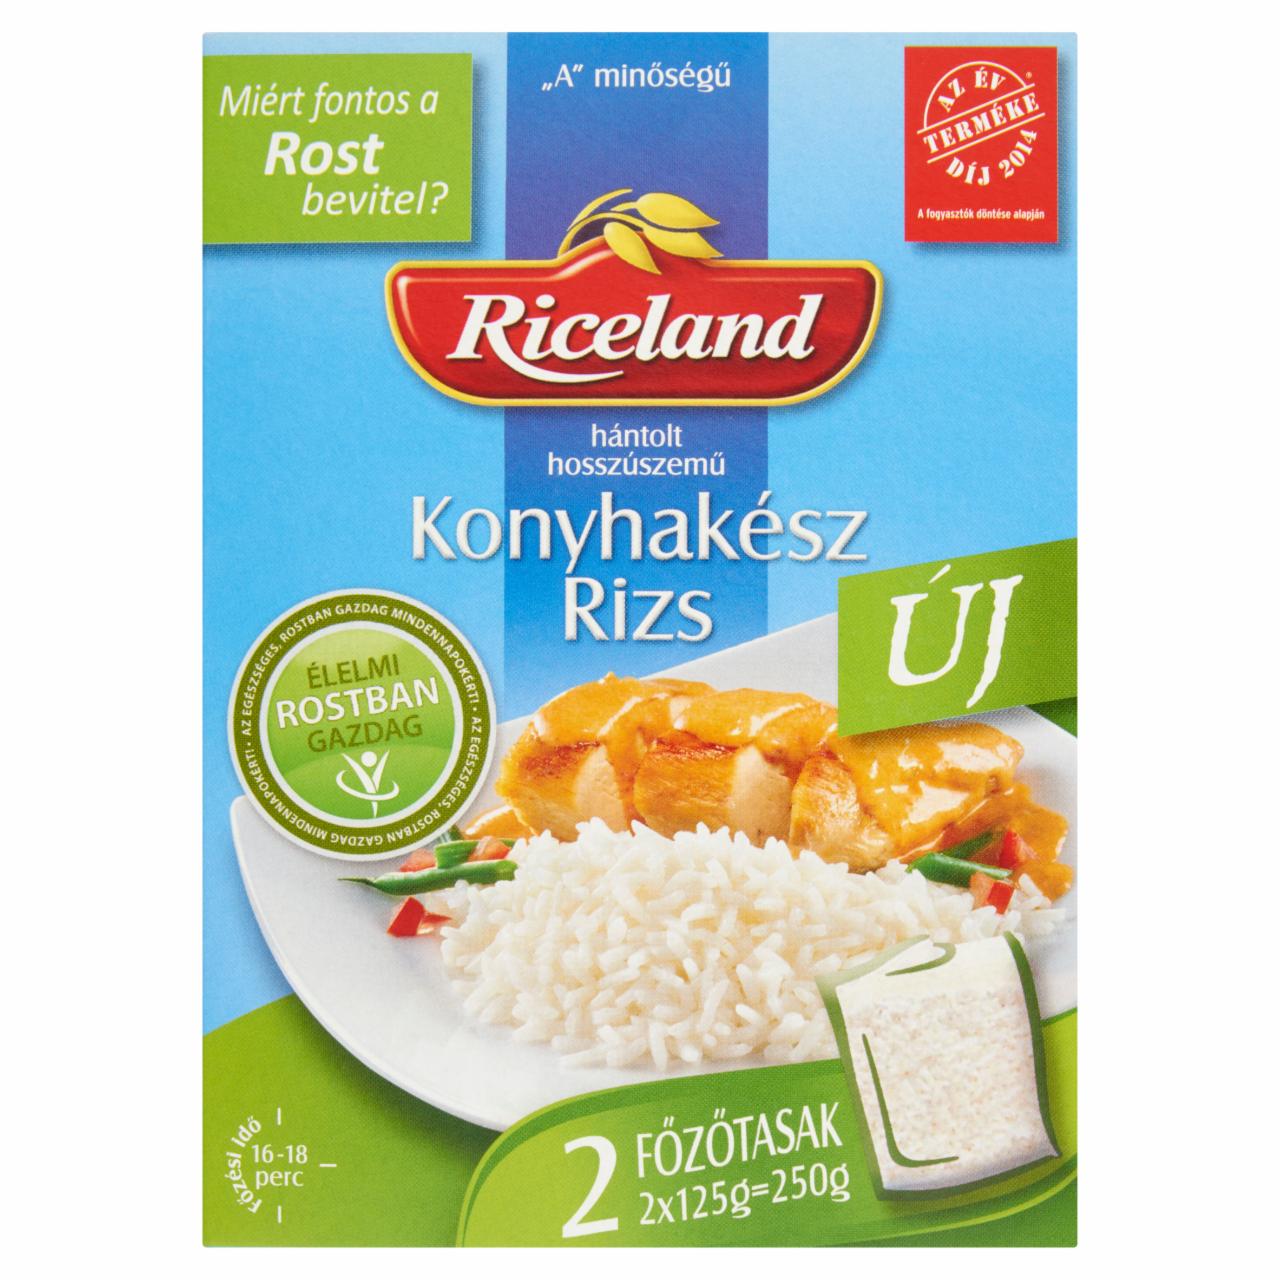 Képek - Riceland Élelmi Rostban Gazdag Konyhakész rizs hántolt hosszúszemű 2 x 125 g